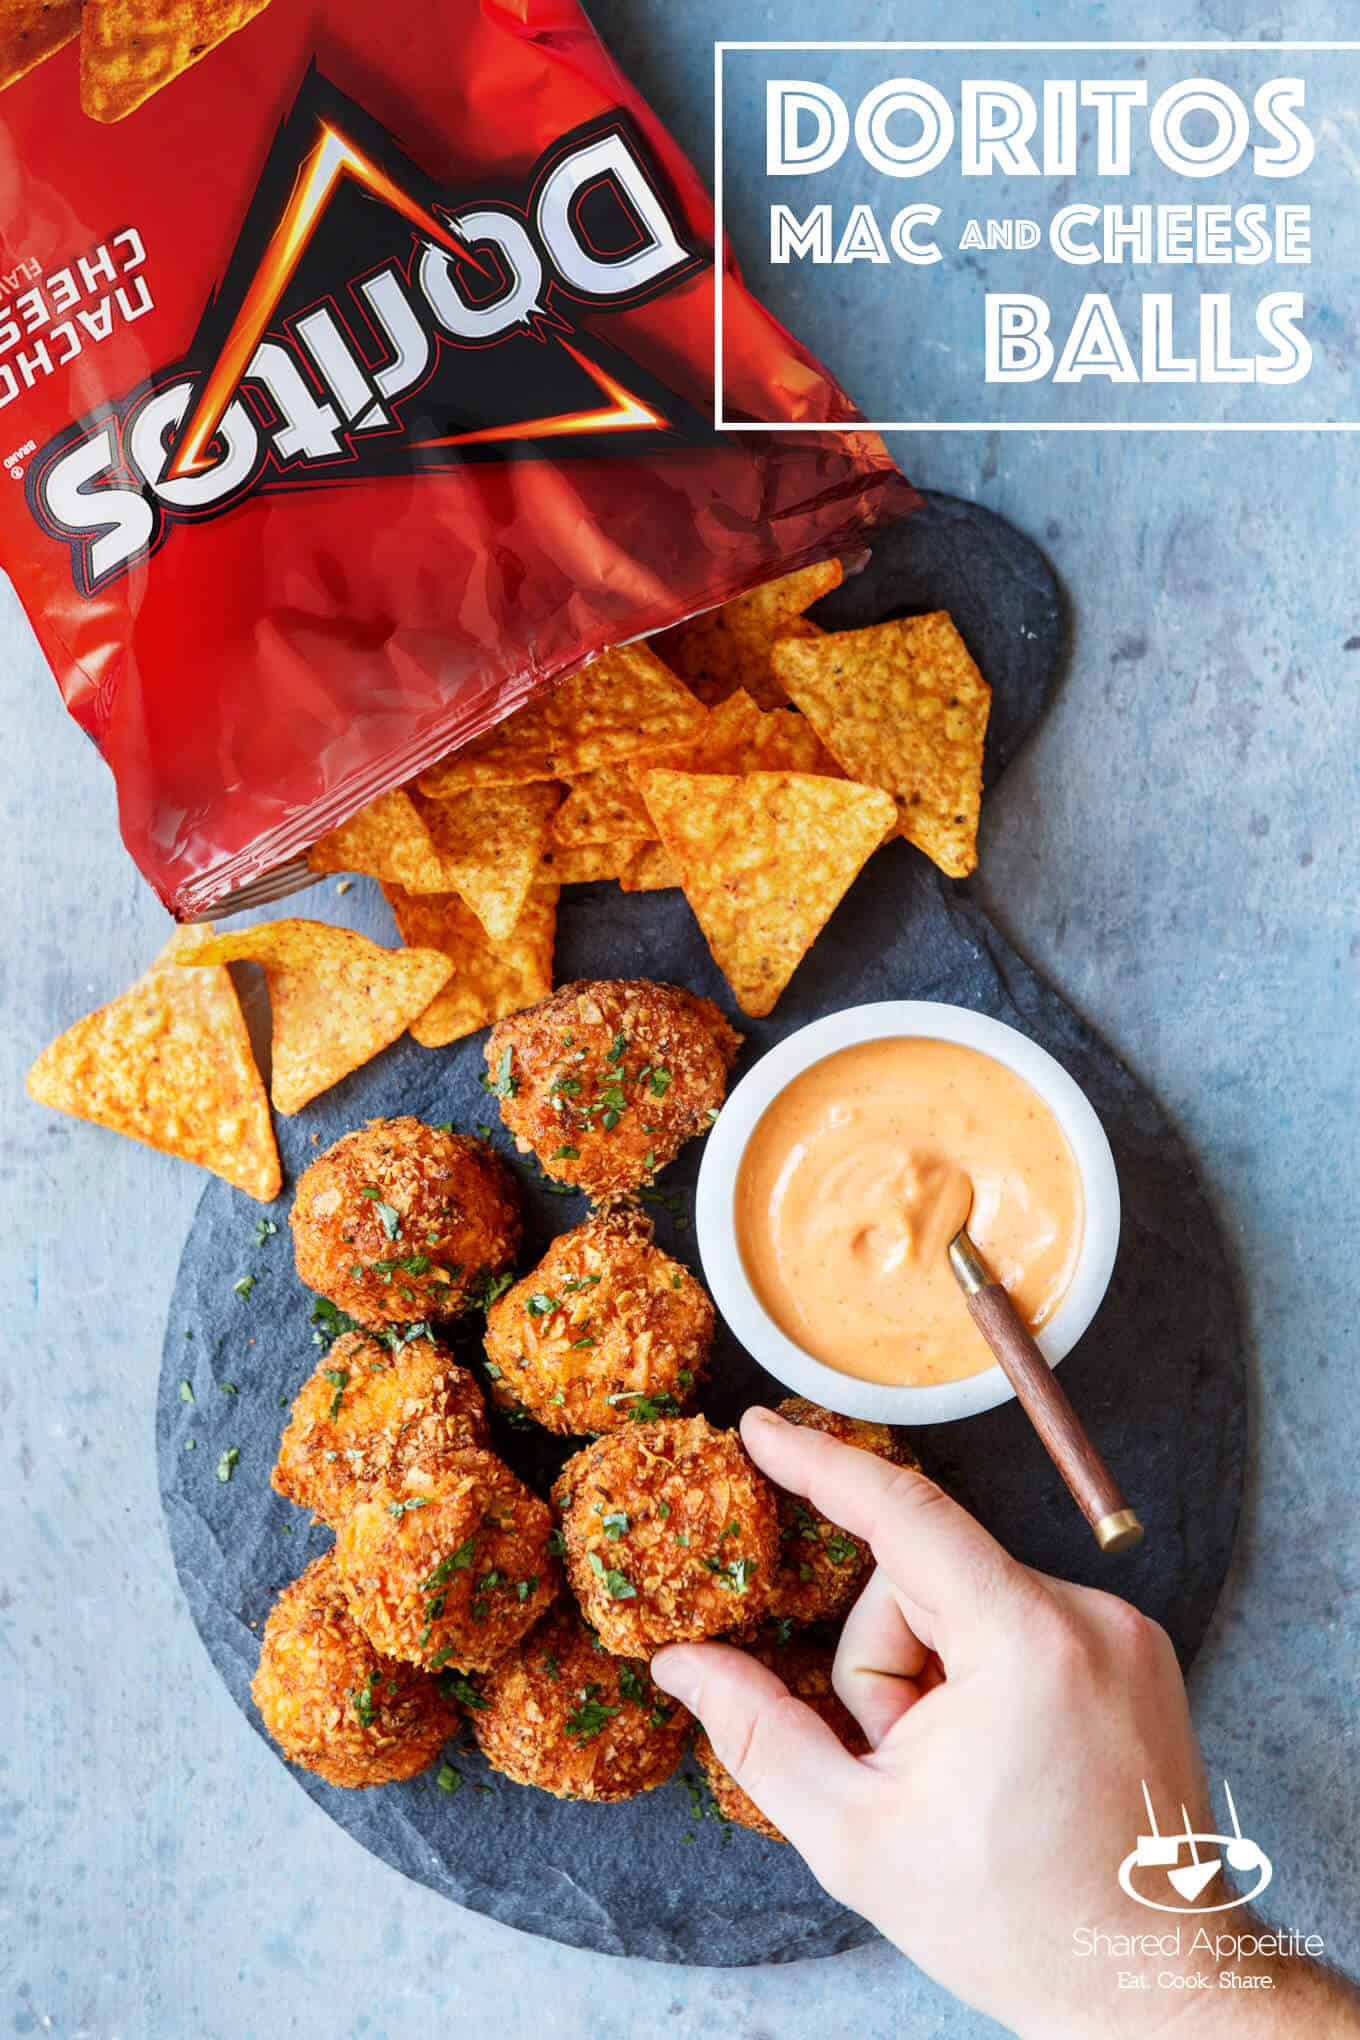 Doritos Mac and Cheese Balls | sharedappetite.com